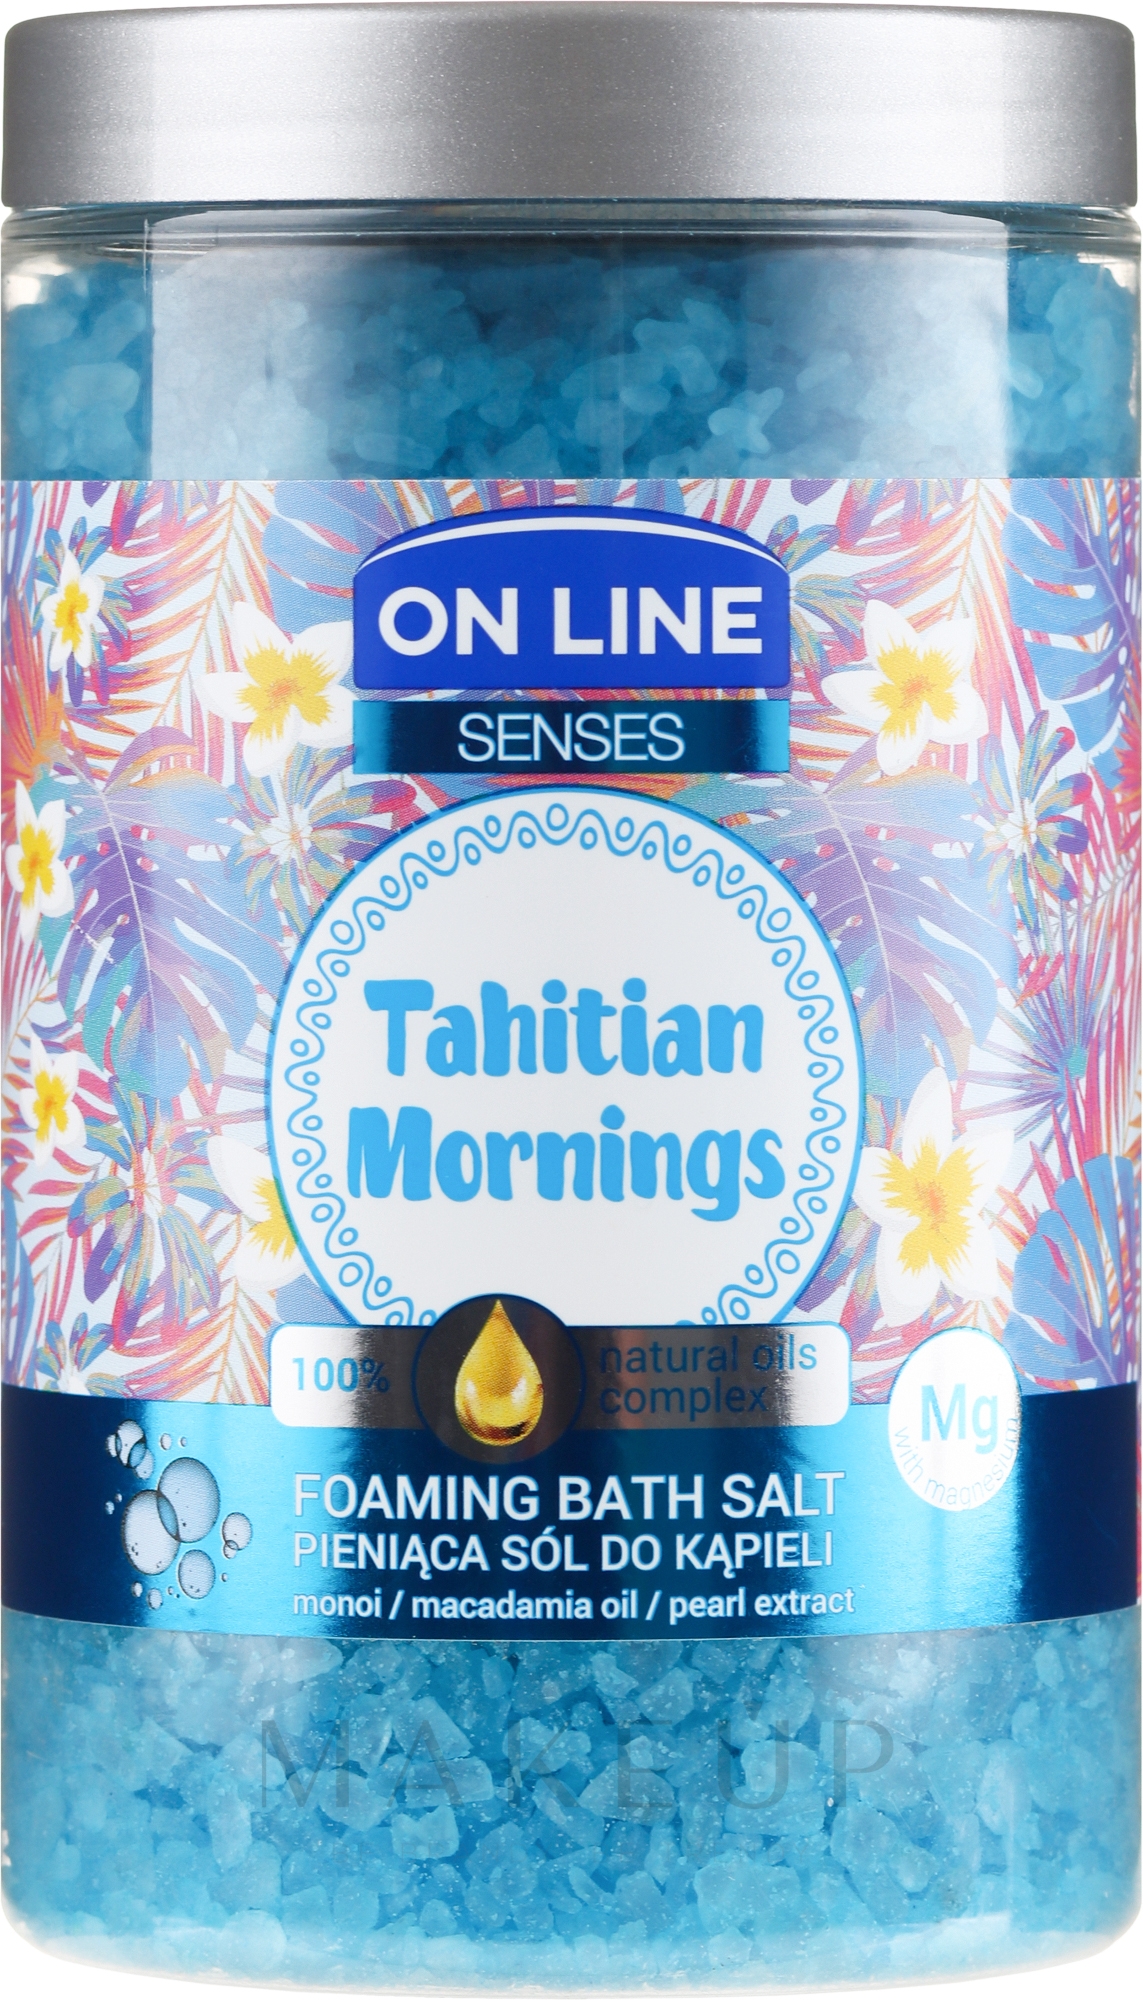 Schäumendes Badesalz mit Manoi, Macadamia und Perlenextrakt - On Line Senses Bath Salt Tahitian Mornings — Foto 480 g